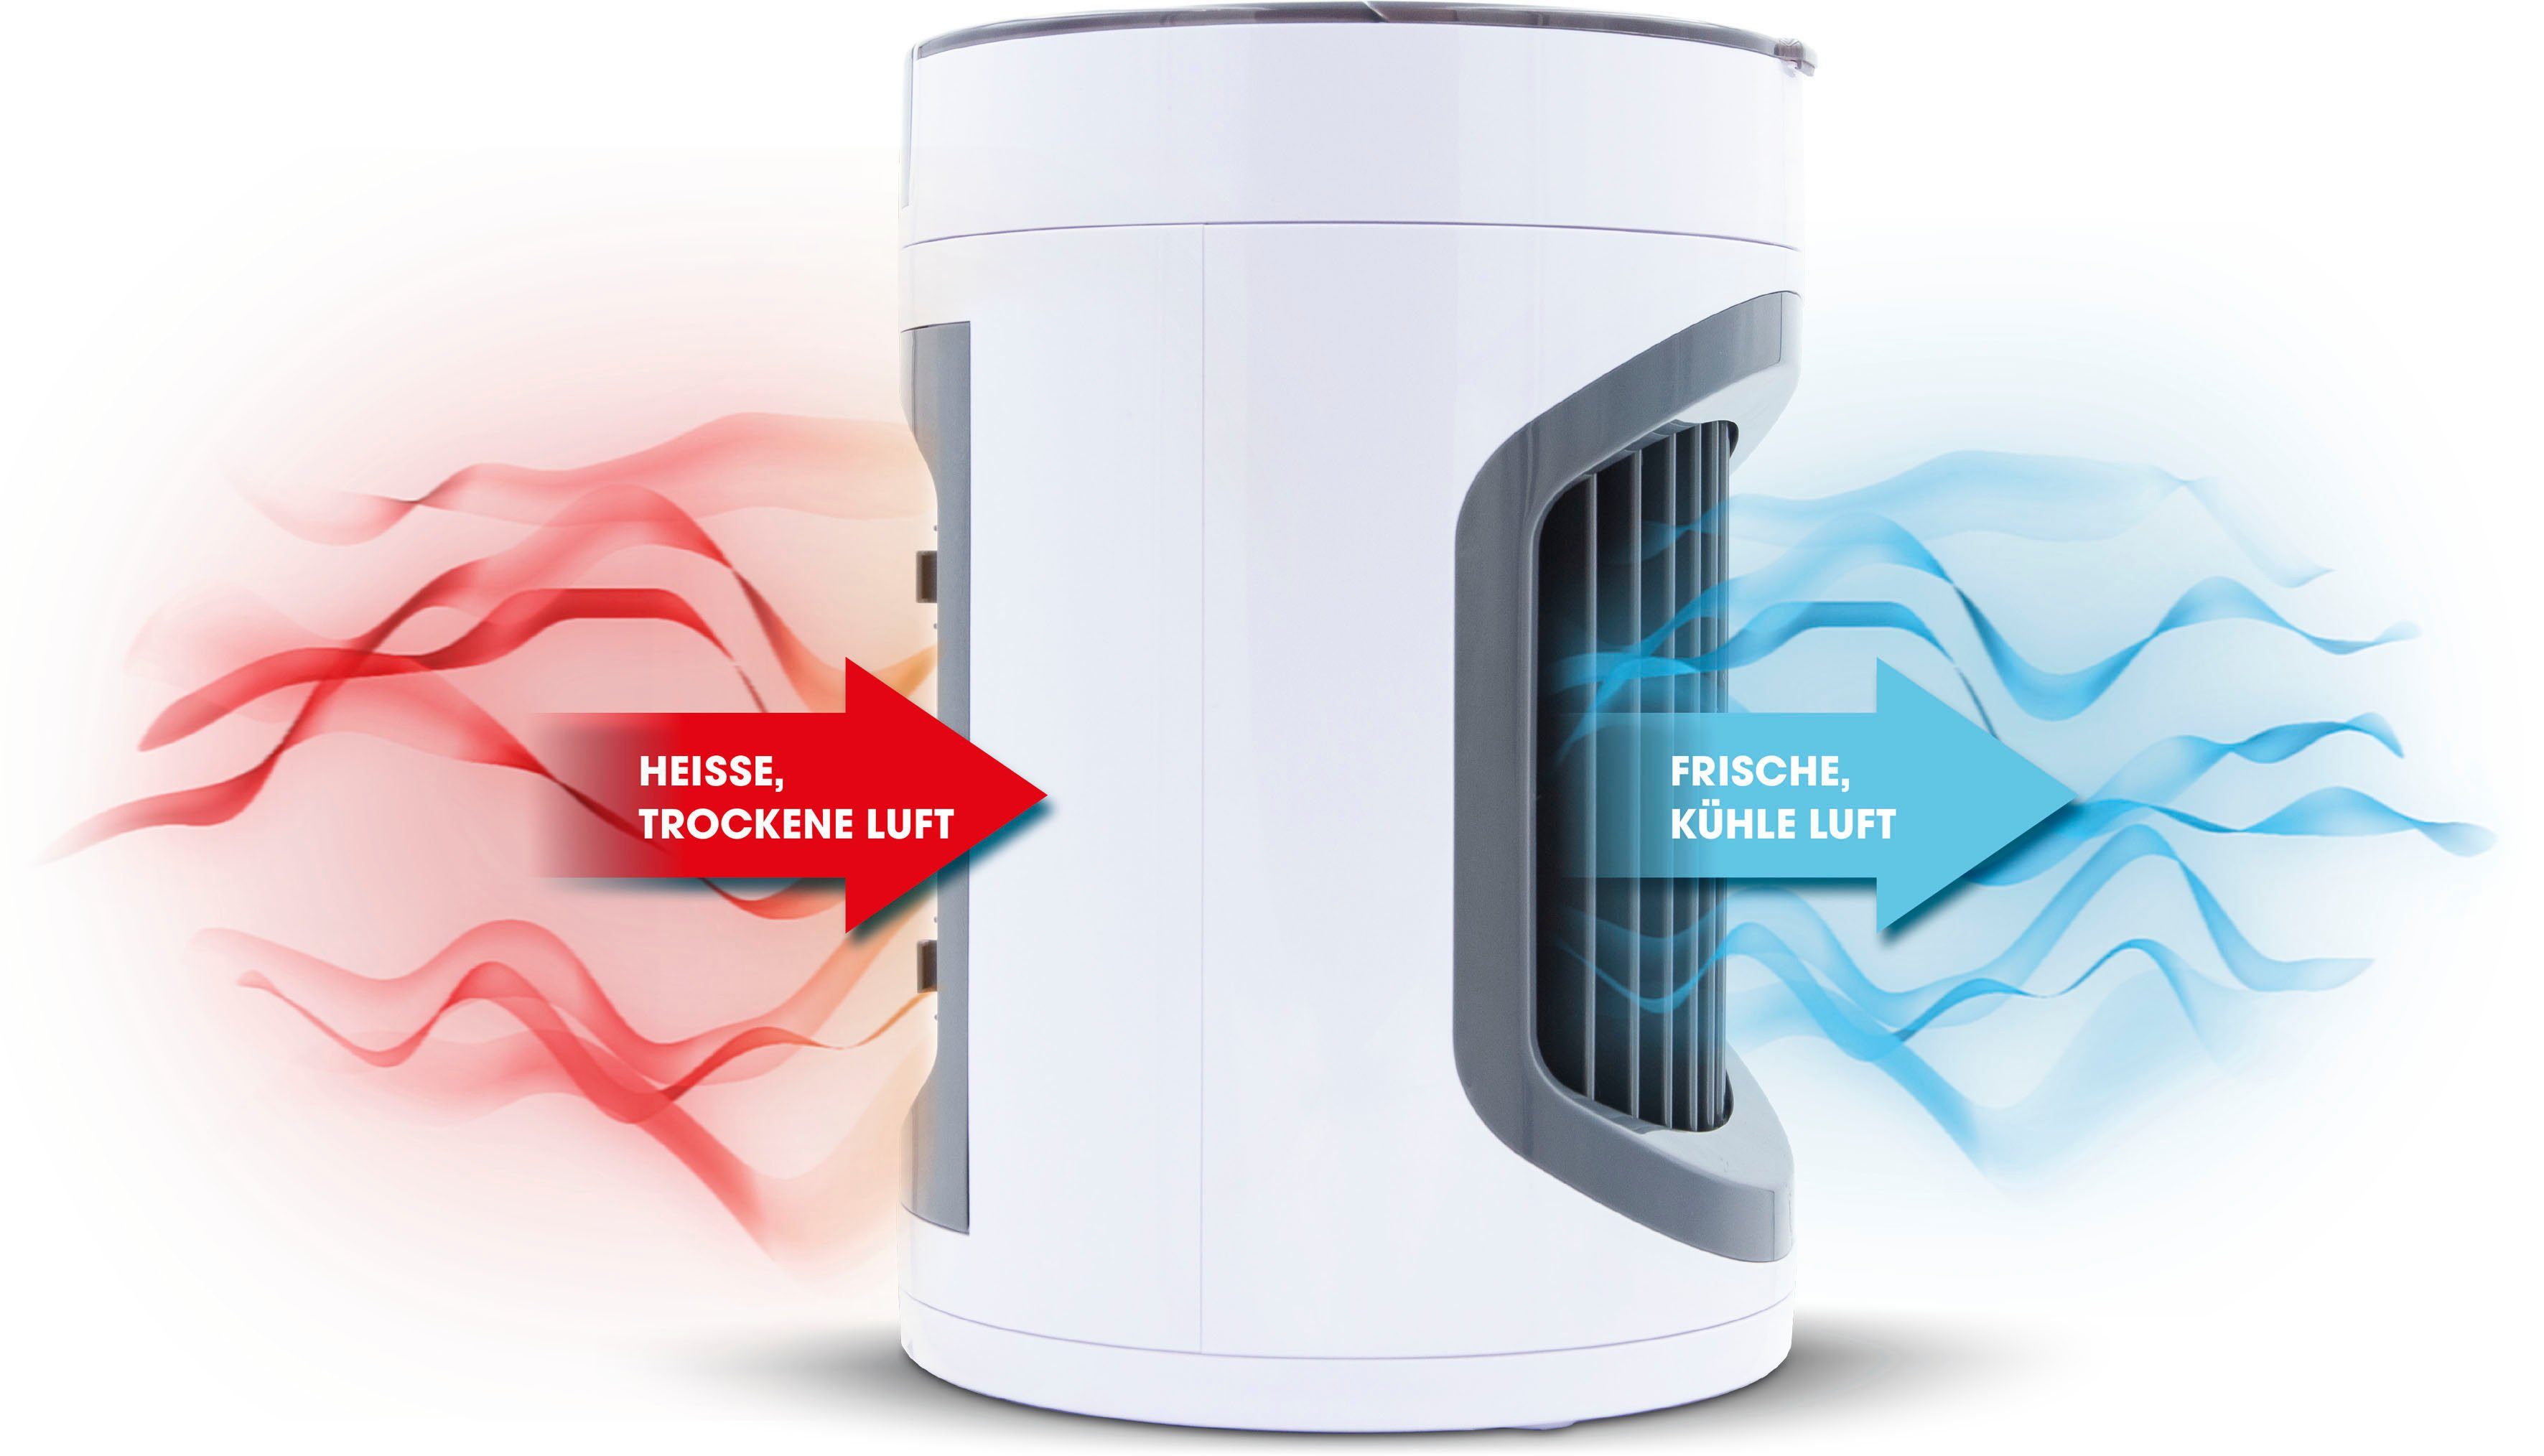 MediaShop Luftkühler Chill, Ventilatorkombigerät Smart